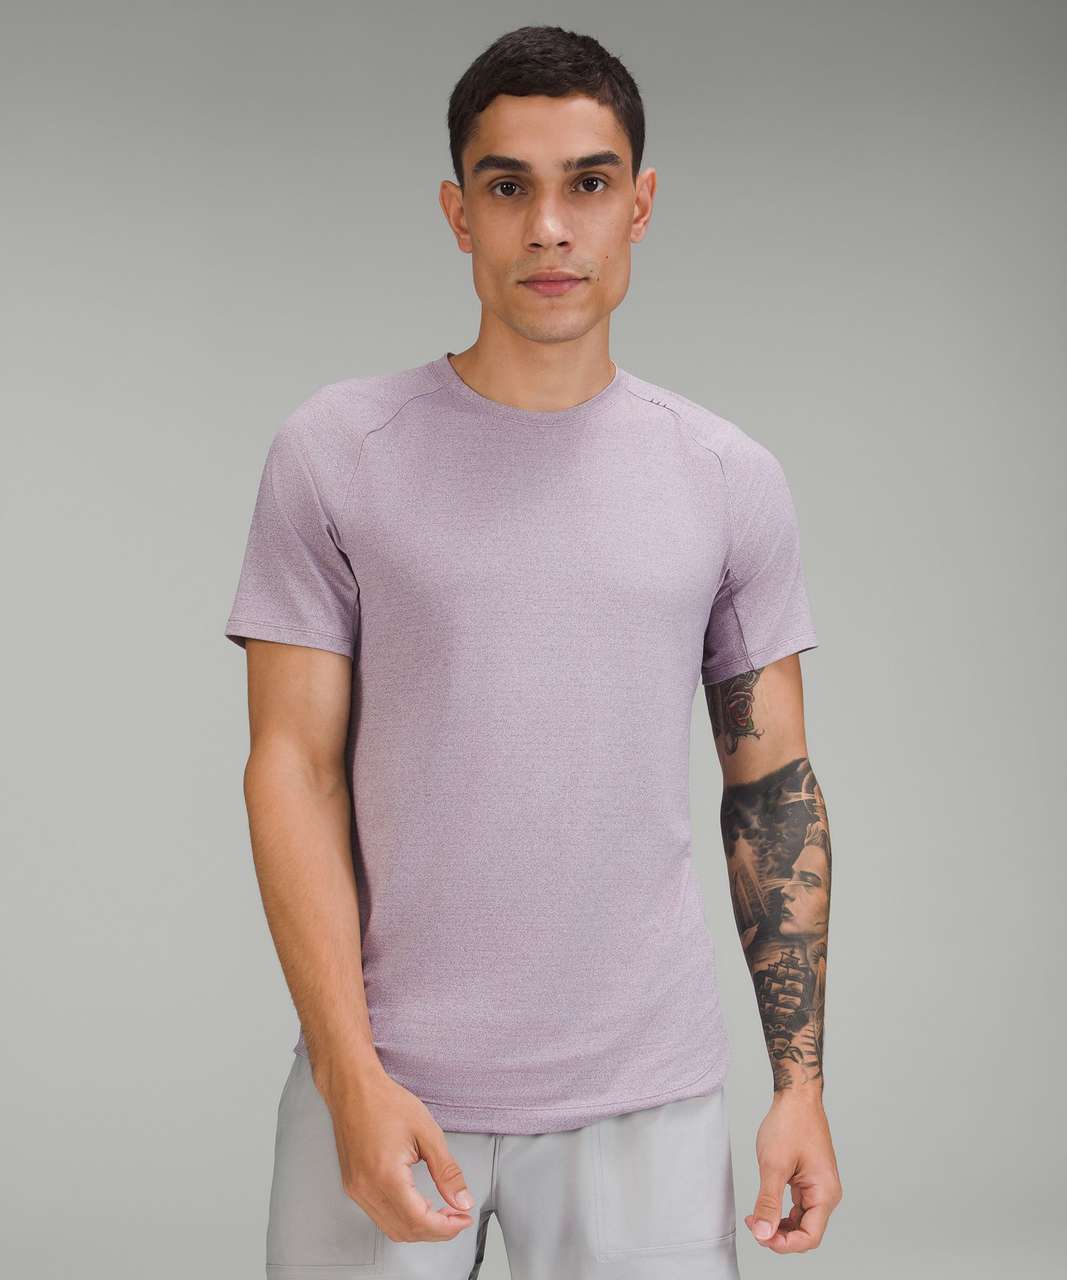 Lululemon Drysense Training Short Sleeve Shirt - Heathered Purple Ash